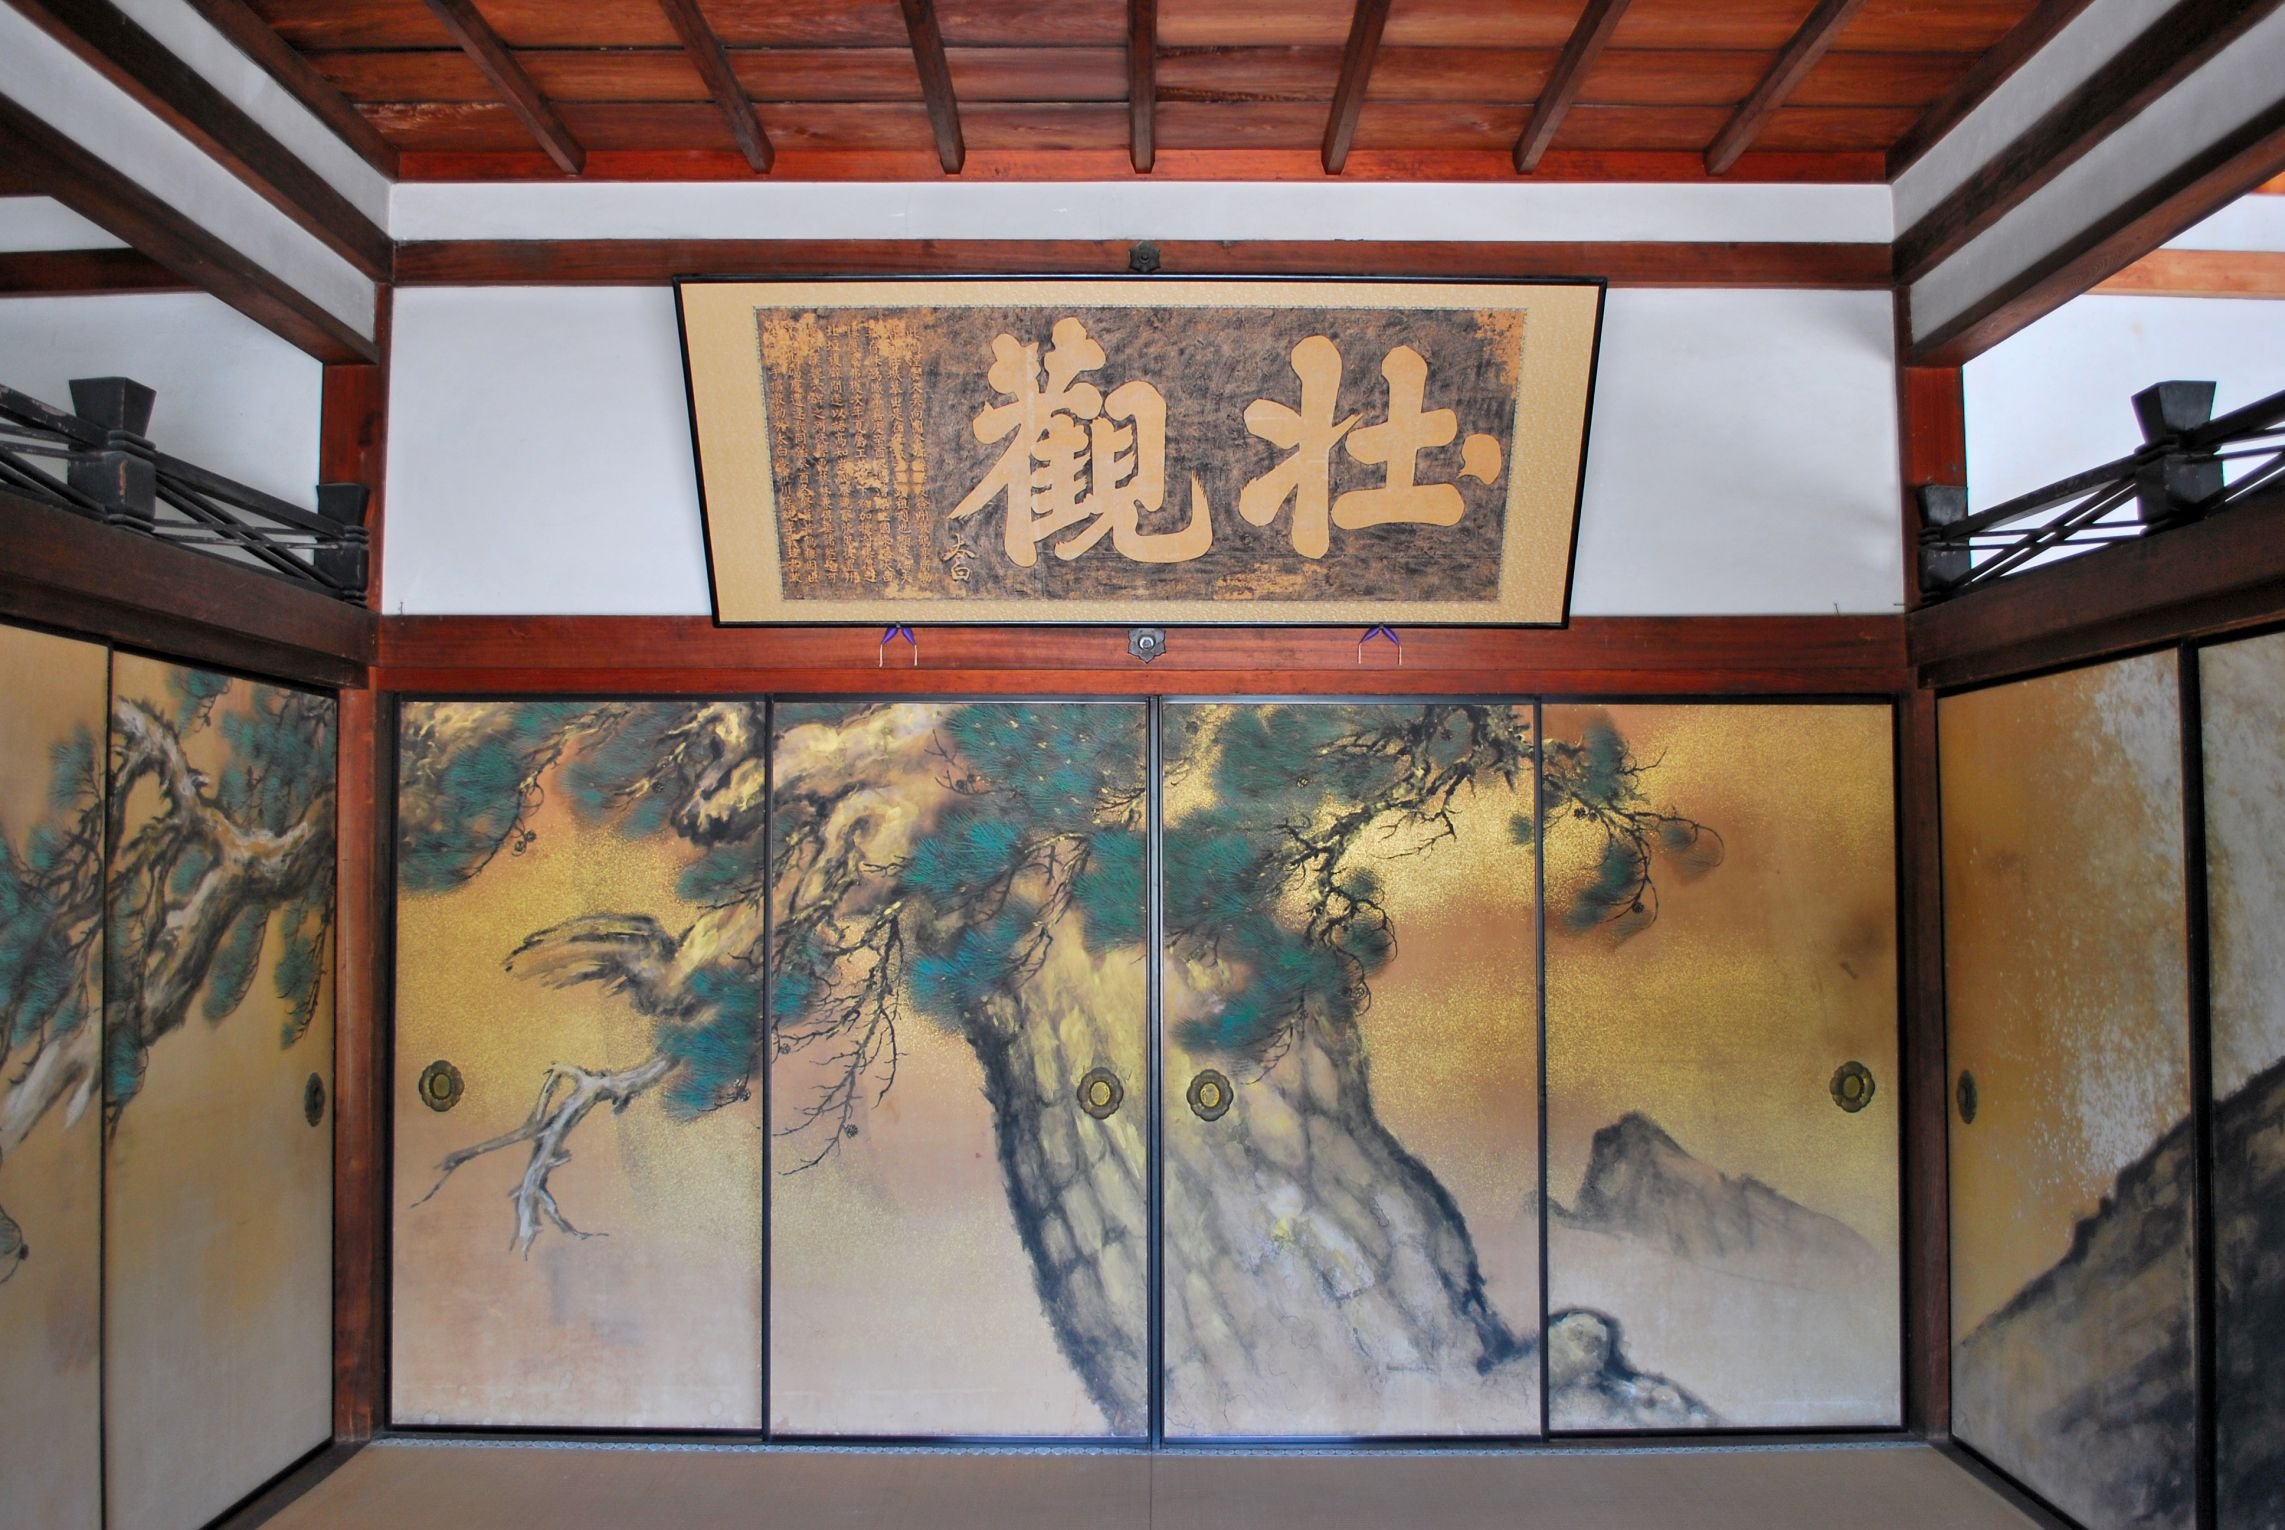 Красивые раздвижные двери фусума, скорей всего, из домов богатых в прошлом вельмож и самураев